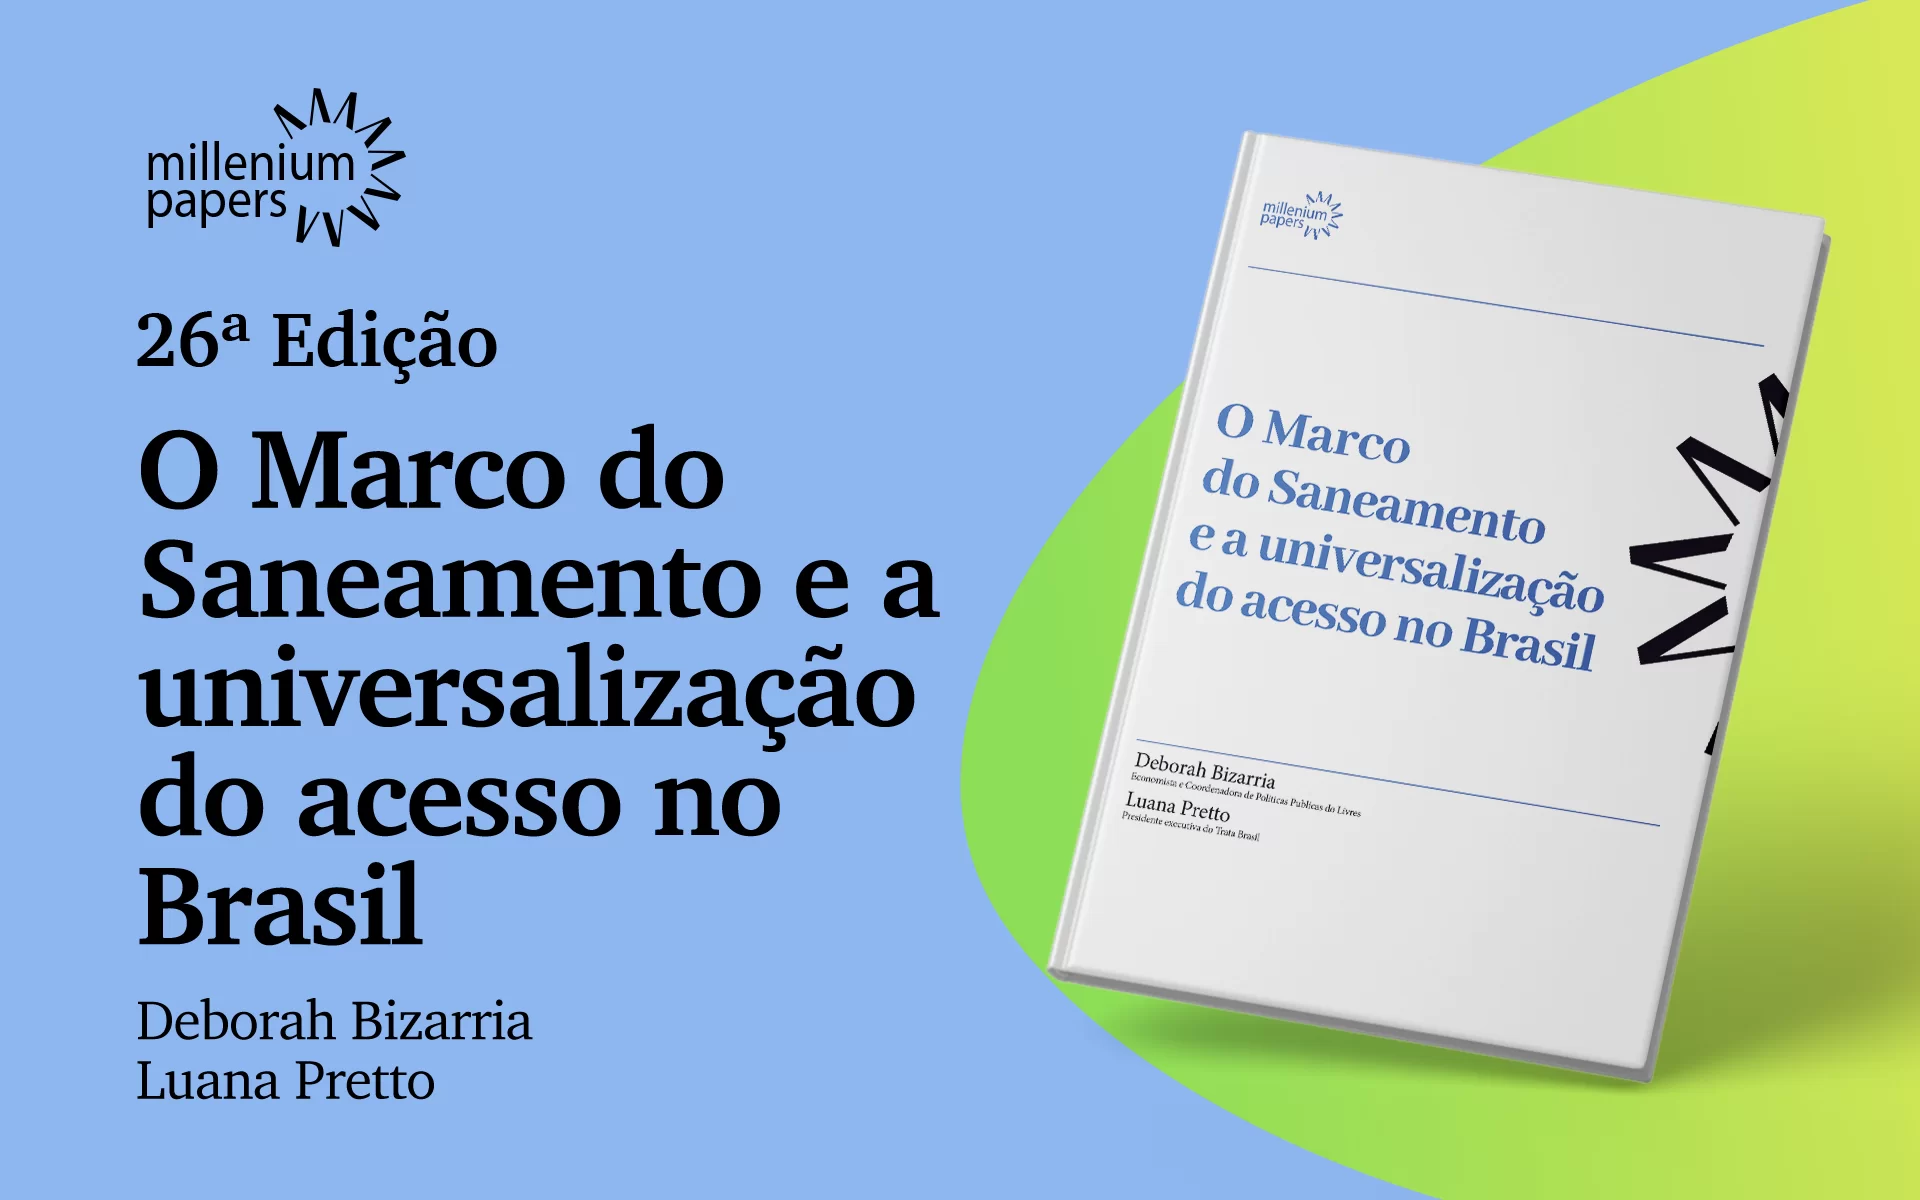 26ª edição do Millenium Papers, O Marco do Saneamento e a Universalização do Acesso no Brasil